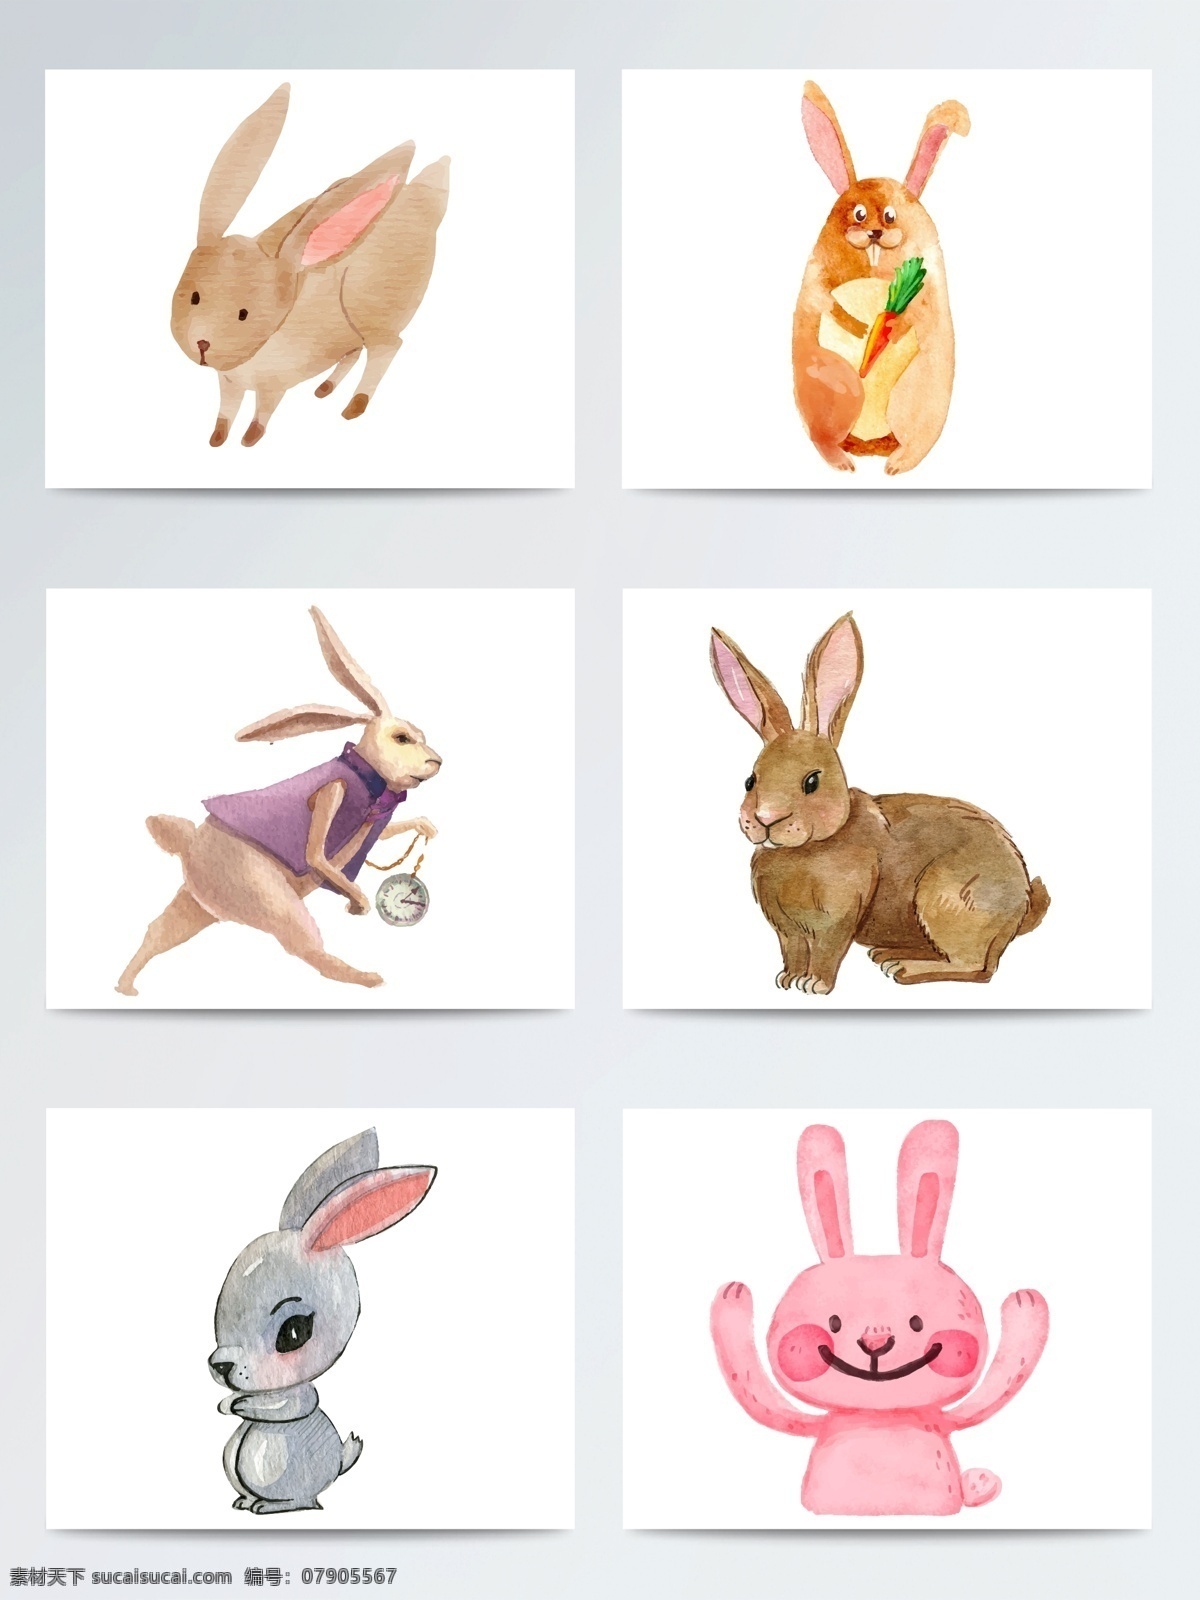 手绘 水彩 兔子 复活节 ai格式 卡通兔子 矢量素材 复活兔子 可爱兔子 手绘兔子 节日元素 水彩兔子